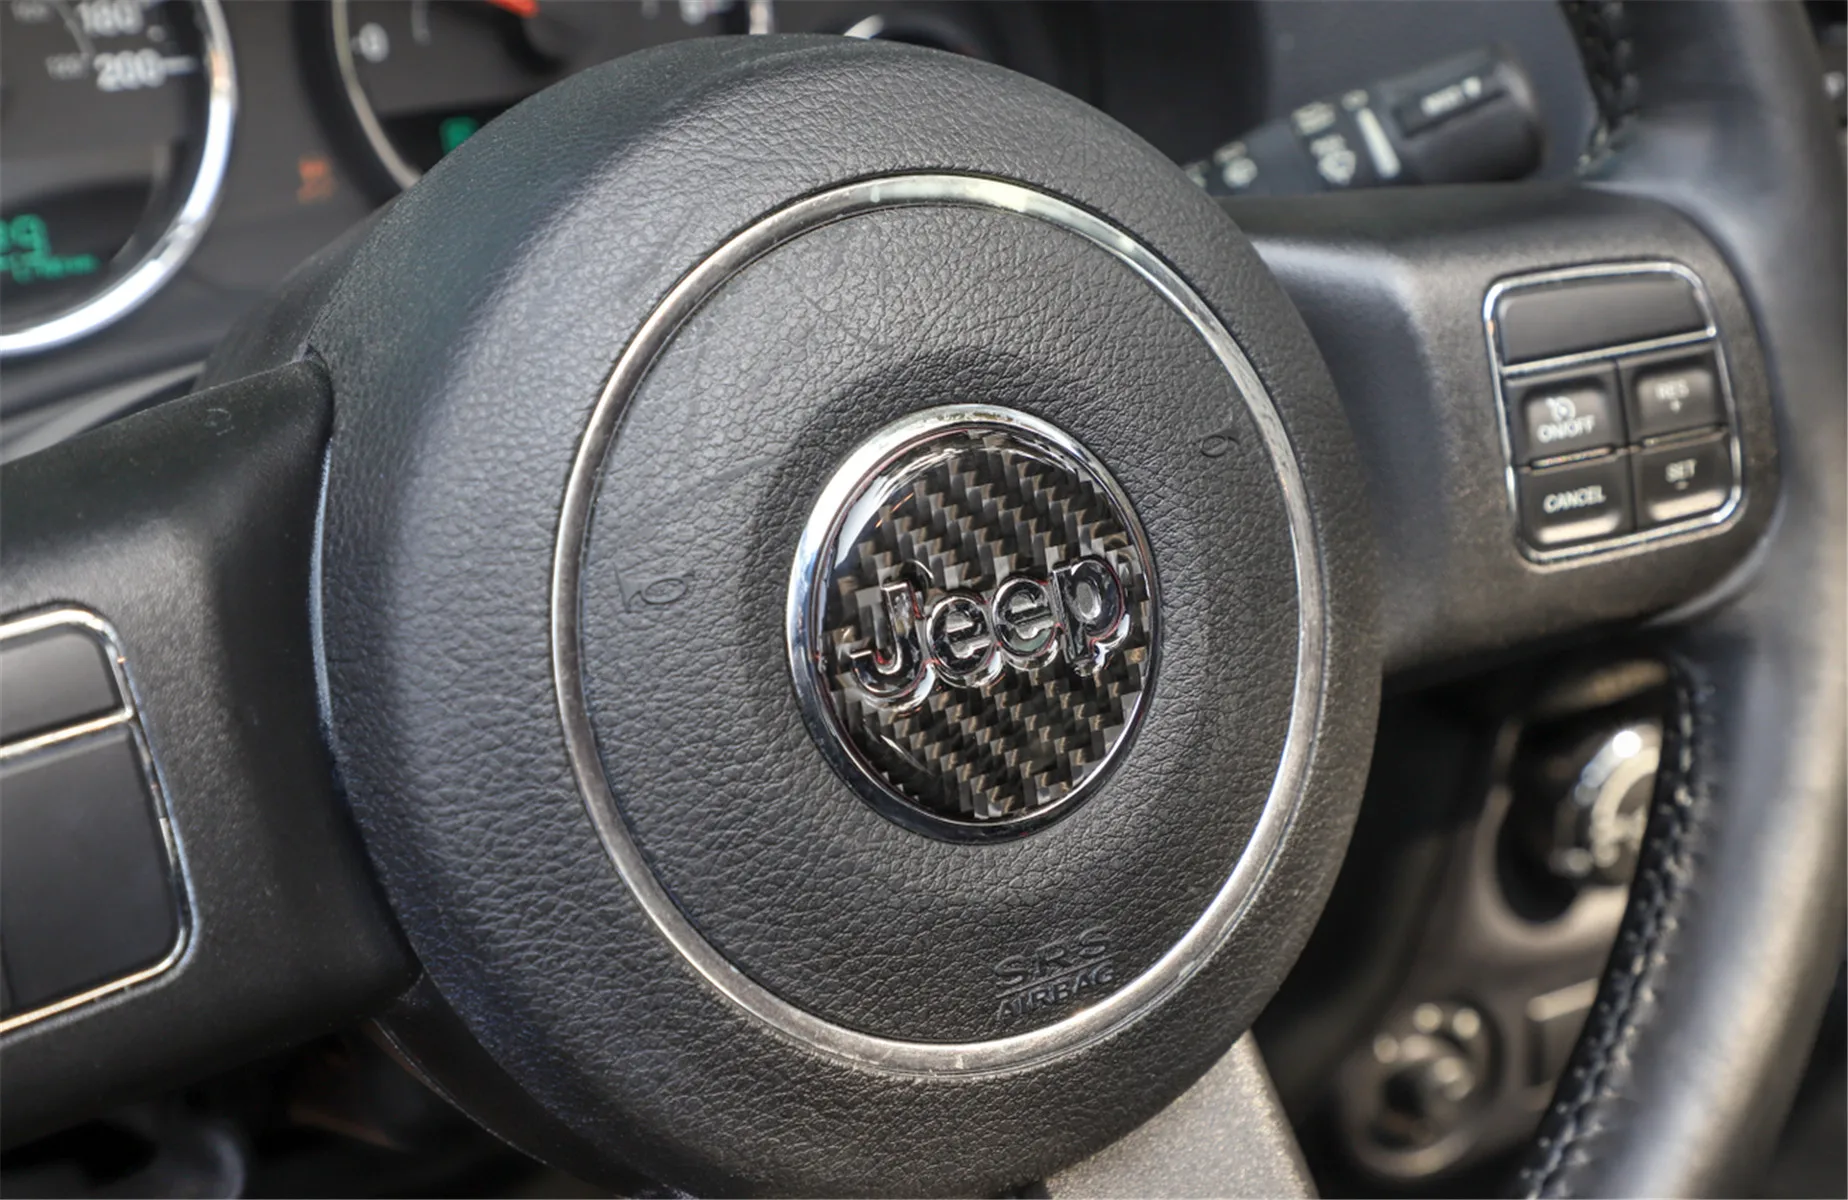 

Декоративный чехол на руль для Jeep Grand Cherokee 2011 +, стильные аксессуары для автомобиля, украшение интерьера